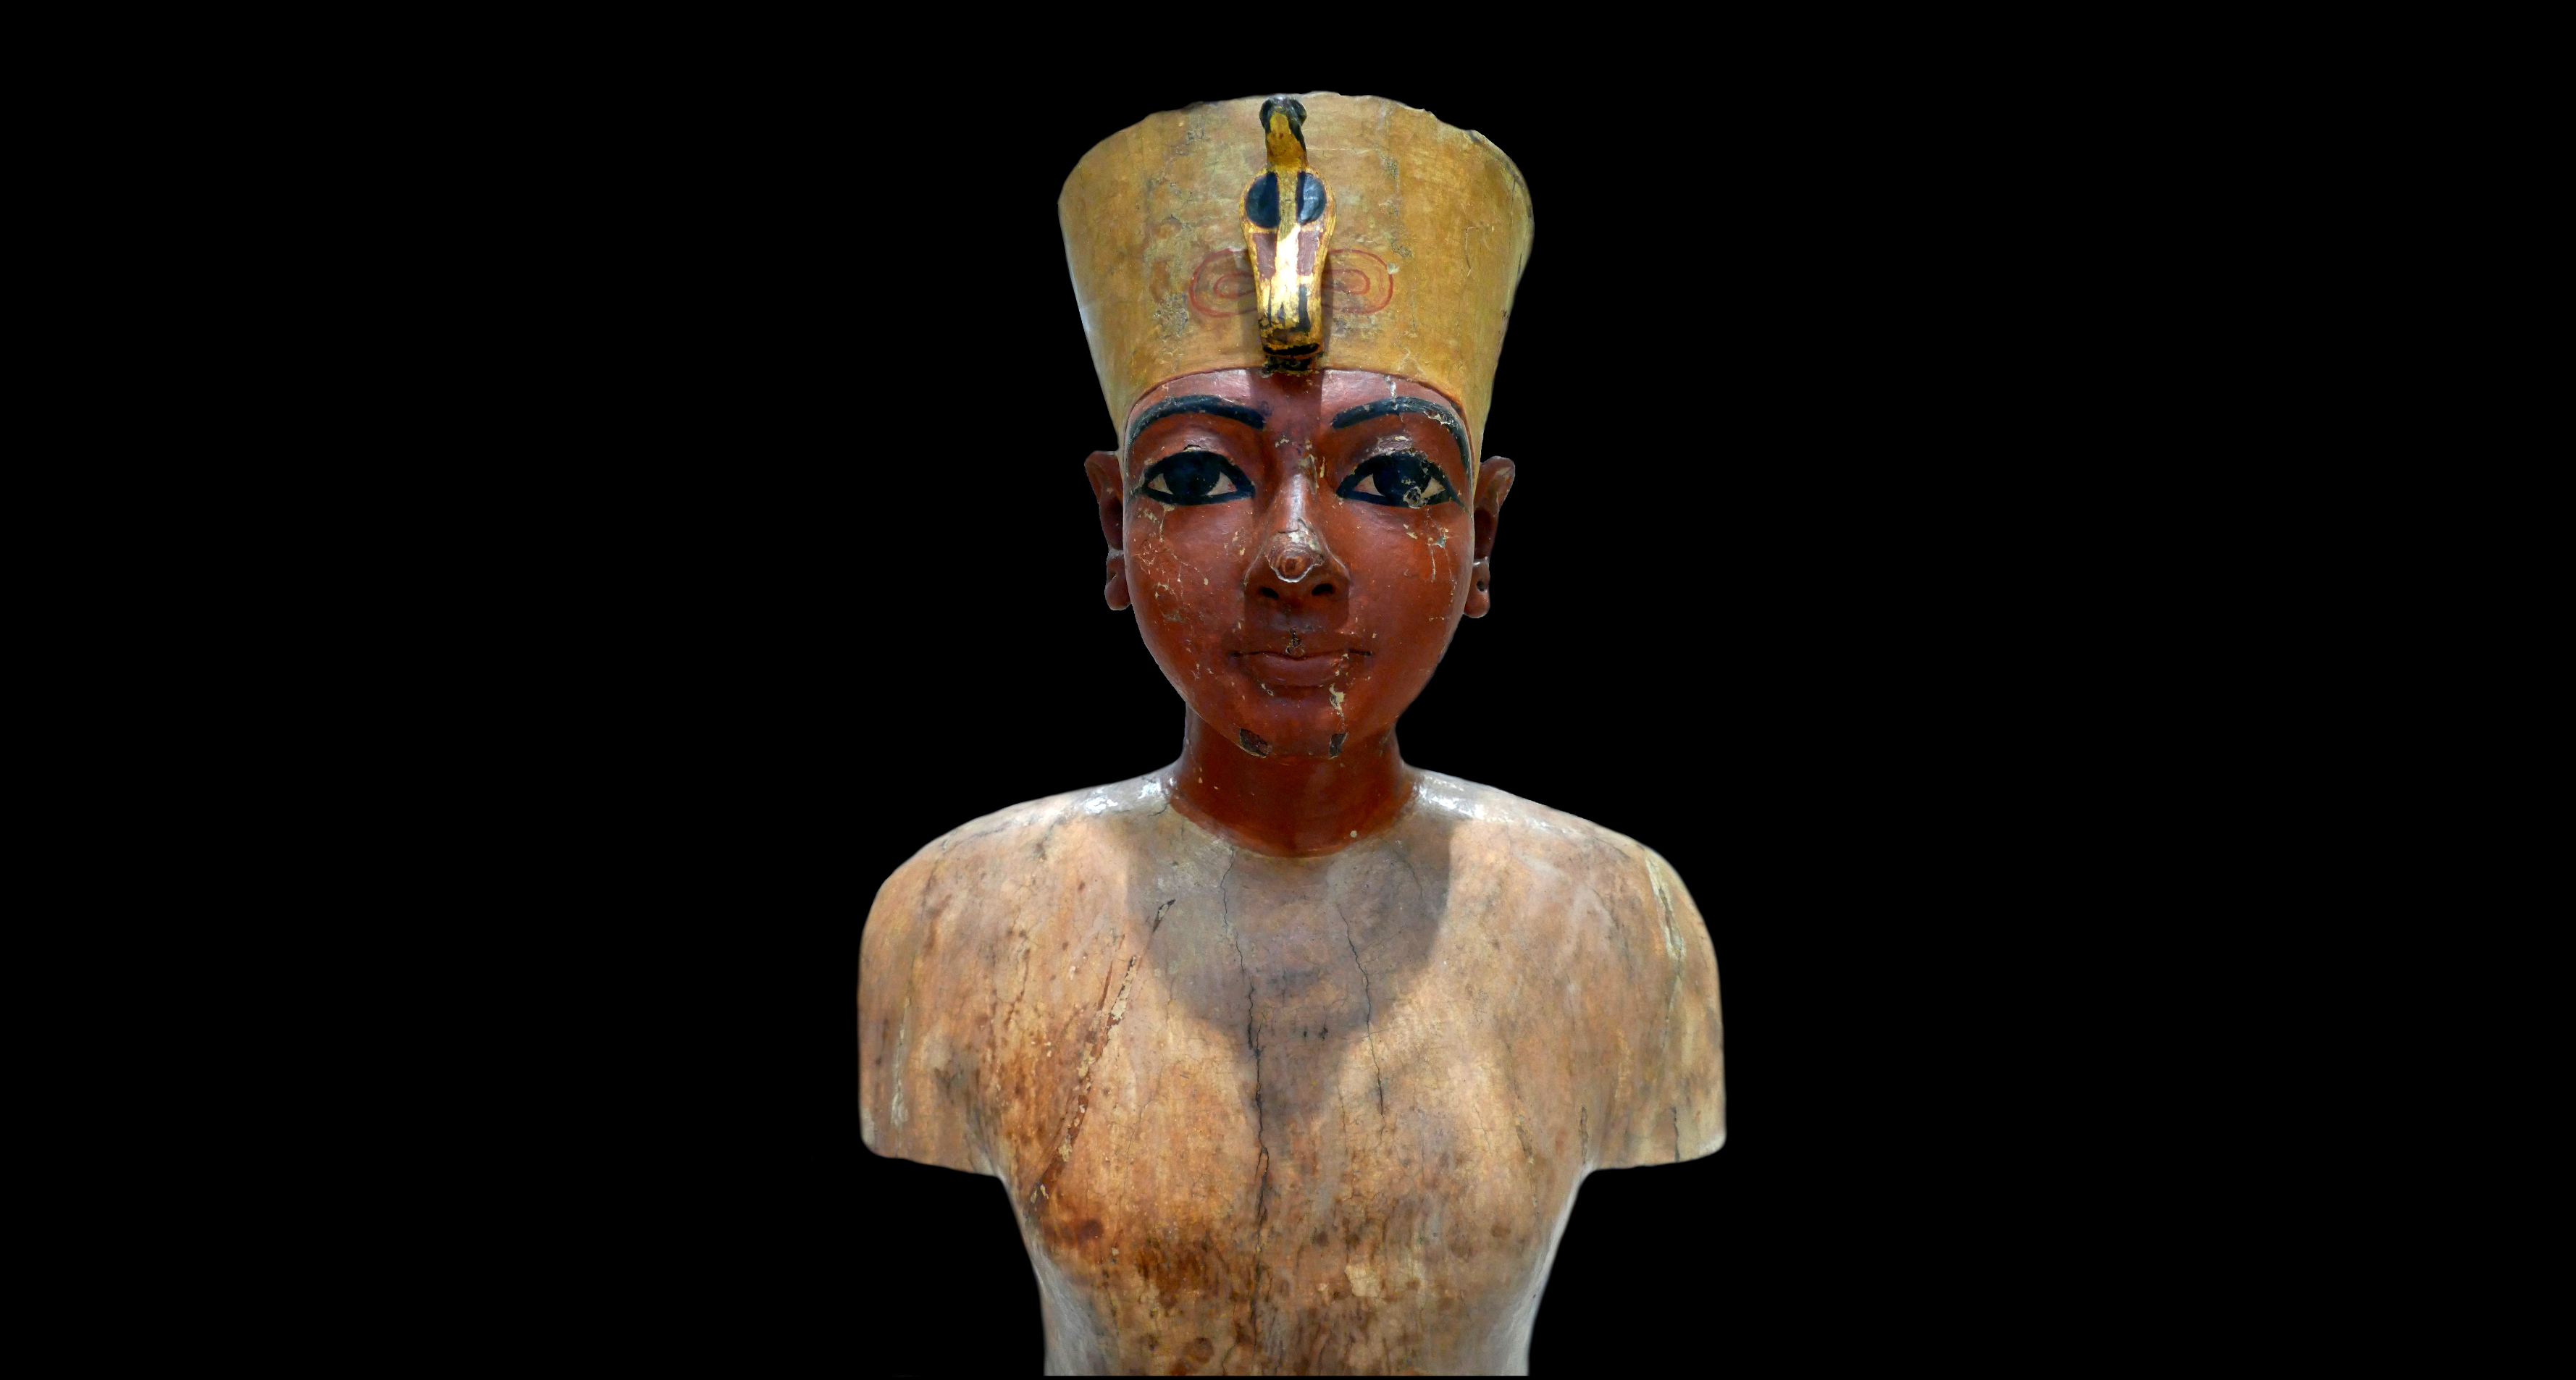 تمثال نصفي لتوت عنخ آمون ، ربما كان تمثالًا لعرض أزياء الملك أو مجوهراته ، وجده علماء الآثار في مقبرة توت عنخ آمون.